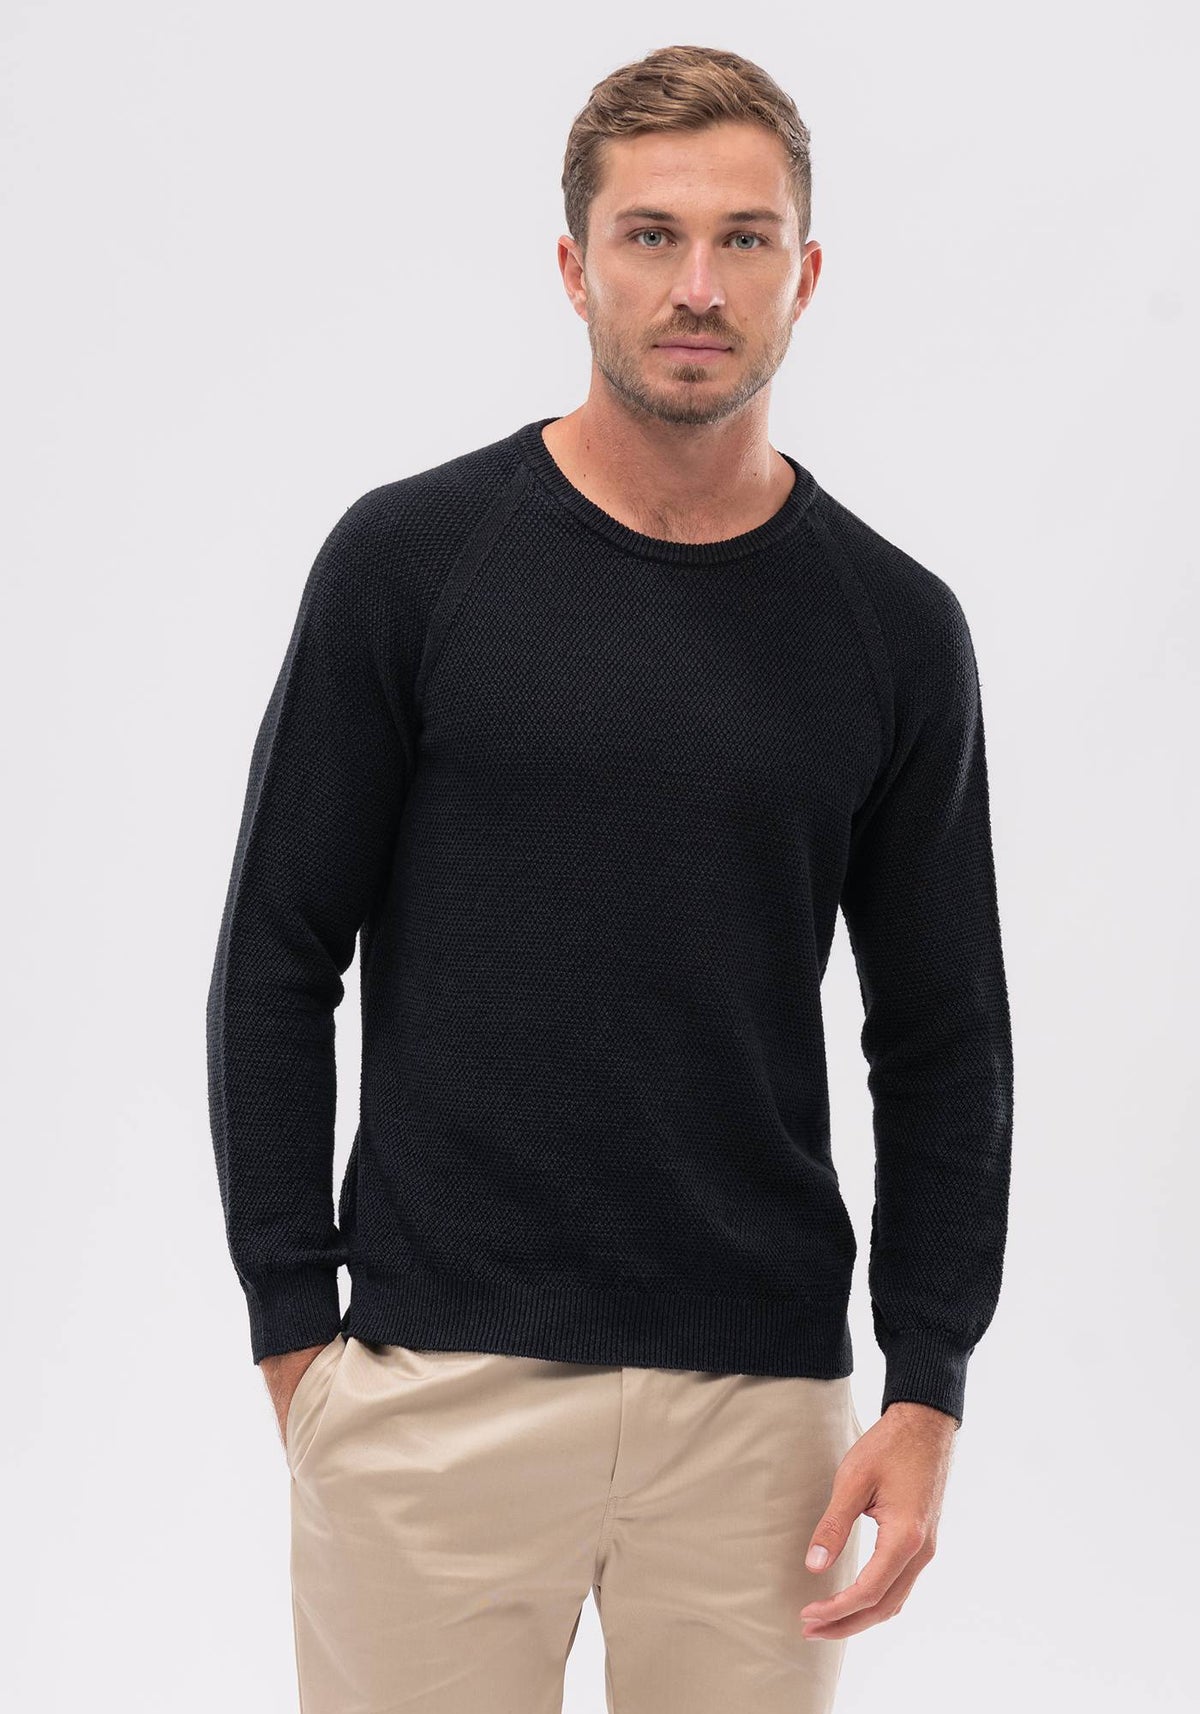 Koa Sweater